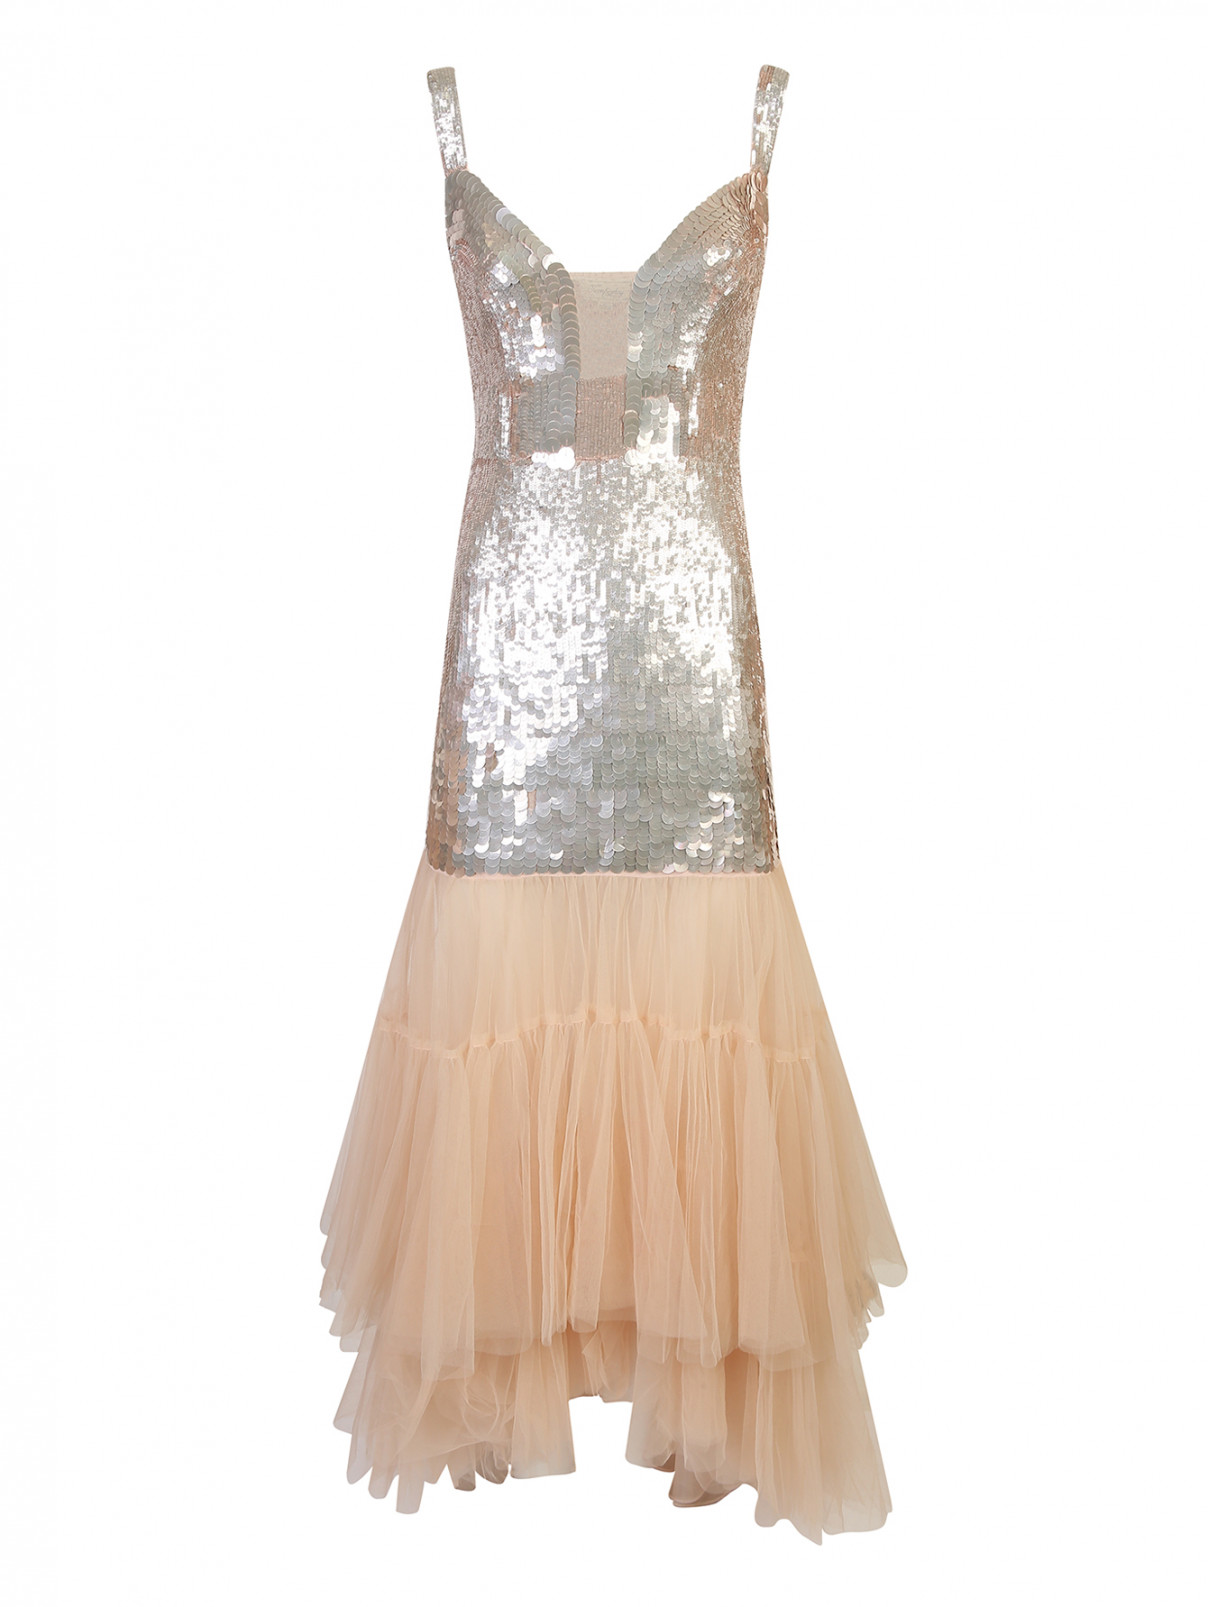 Платье из сетки вышитое пайетками Temperley London  –  Общий вид  – Цвет:  Розовый